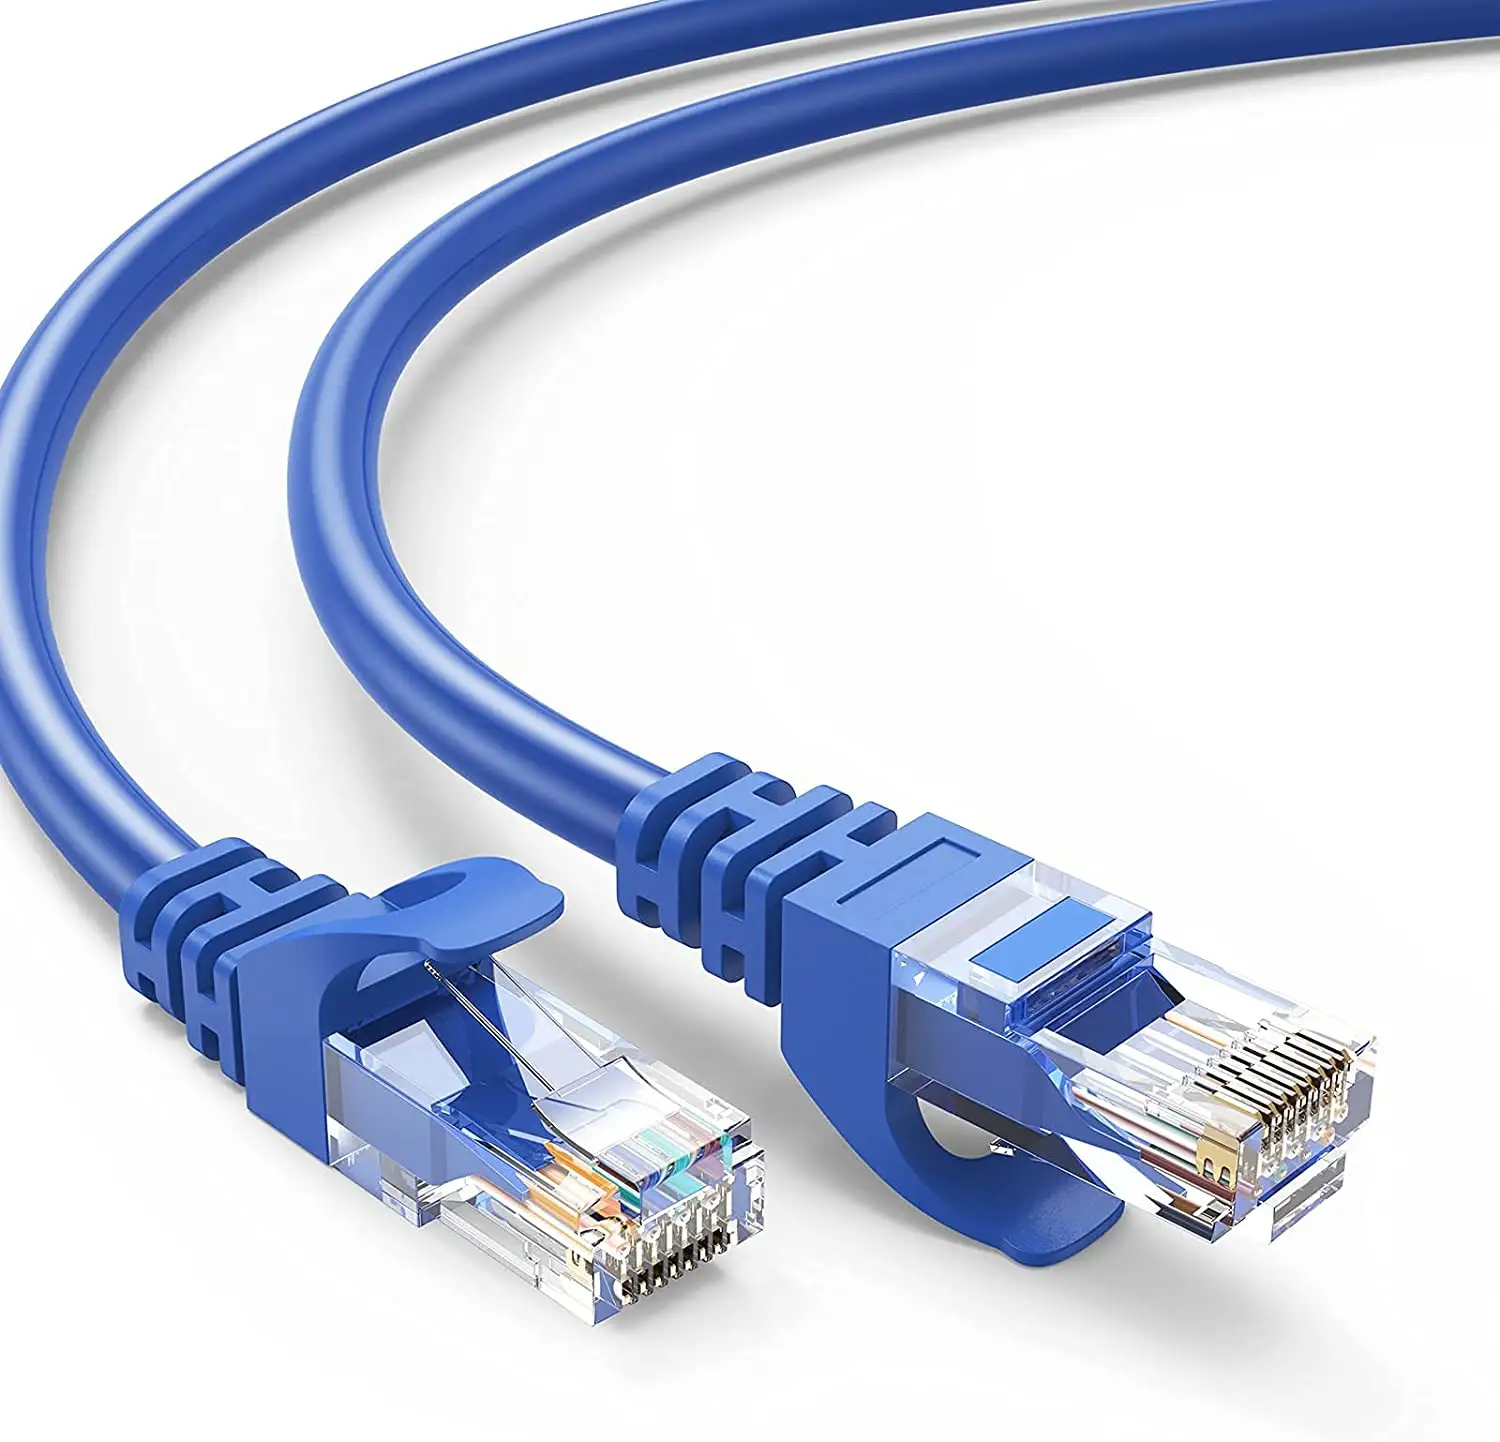 Сетевой кабель UTP Cat 6, сетевой кабель RJ45 Lan CAT 6, патч-корд Ethernet, LAN-кабель для модема, маршрутизатора, компьютера